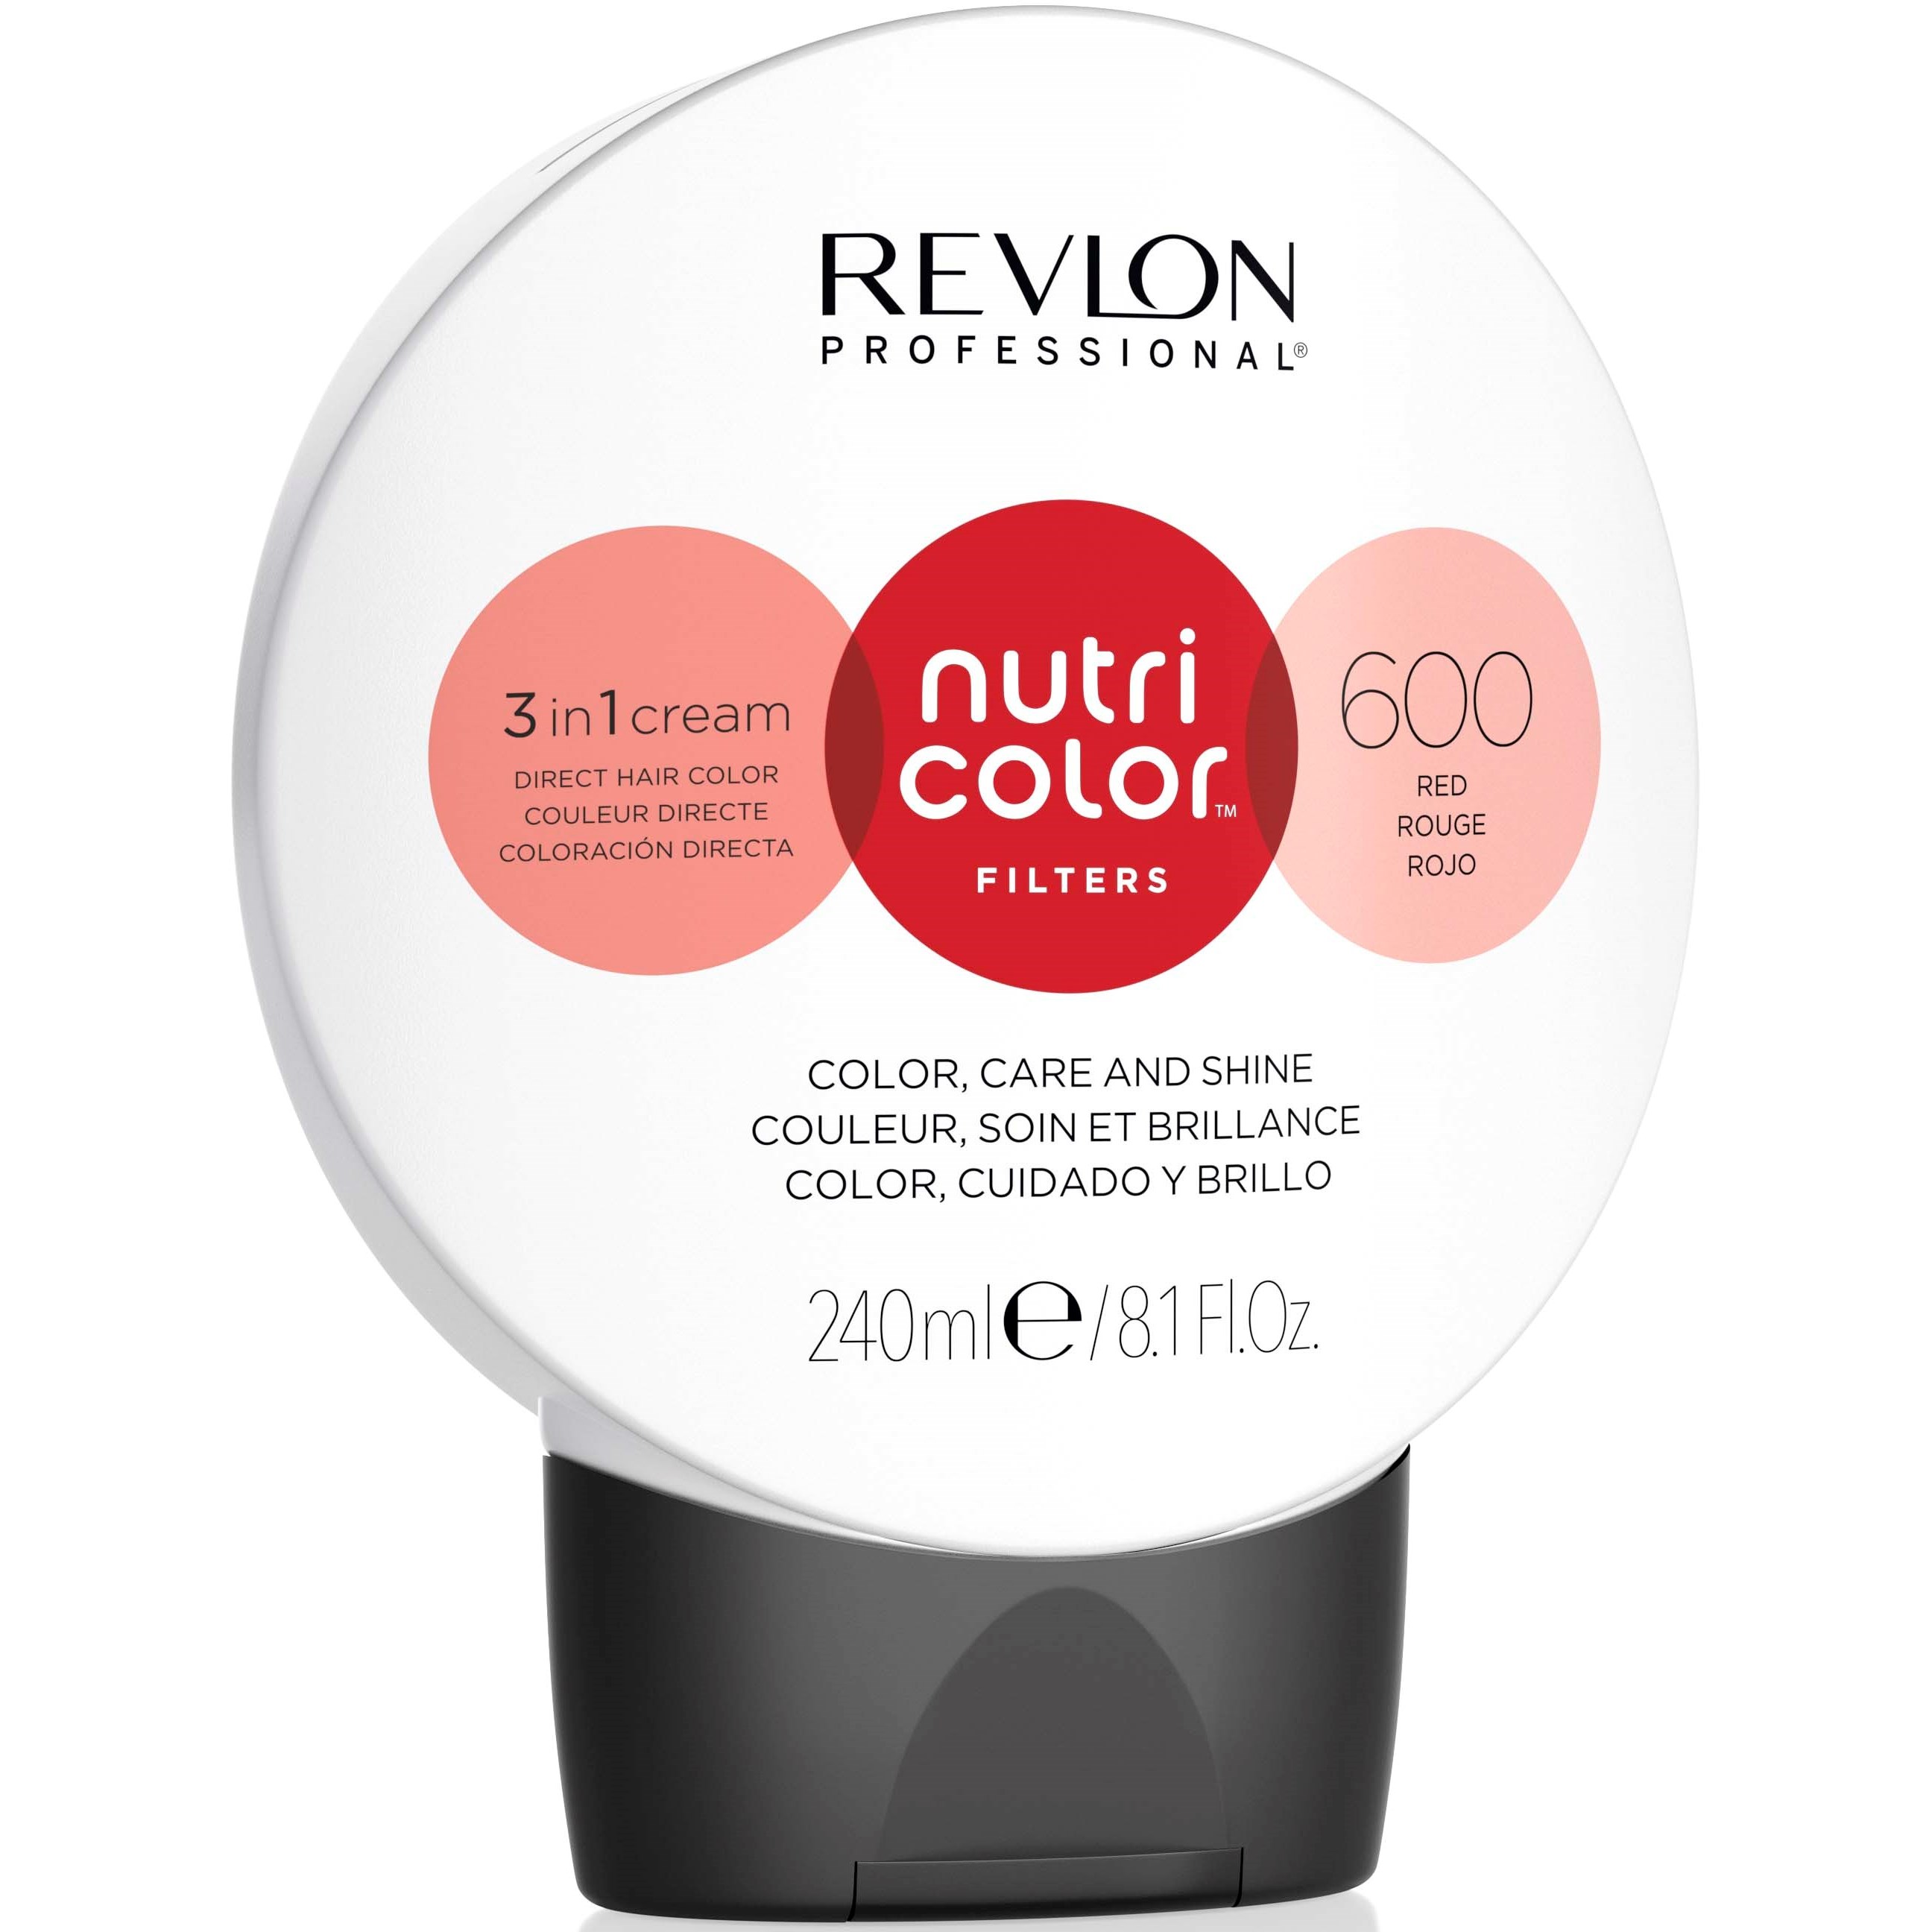 Läs mer om Revlon Nutri Color Filters 600 Red